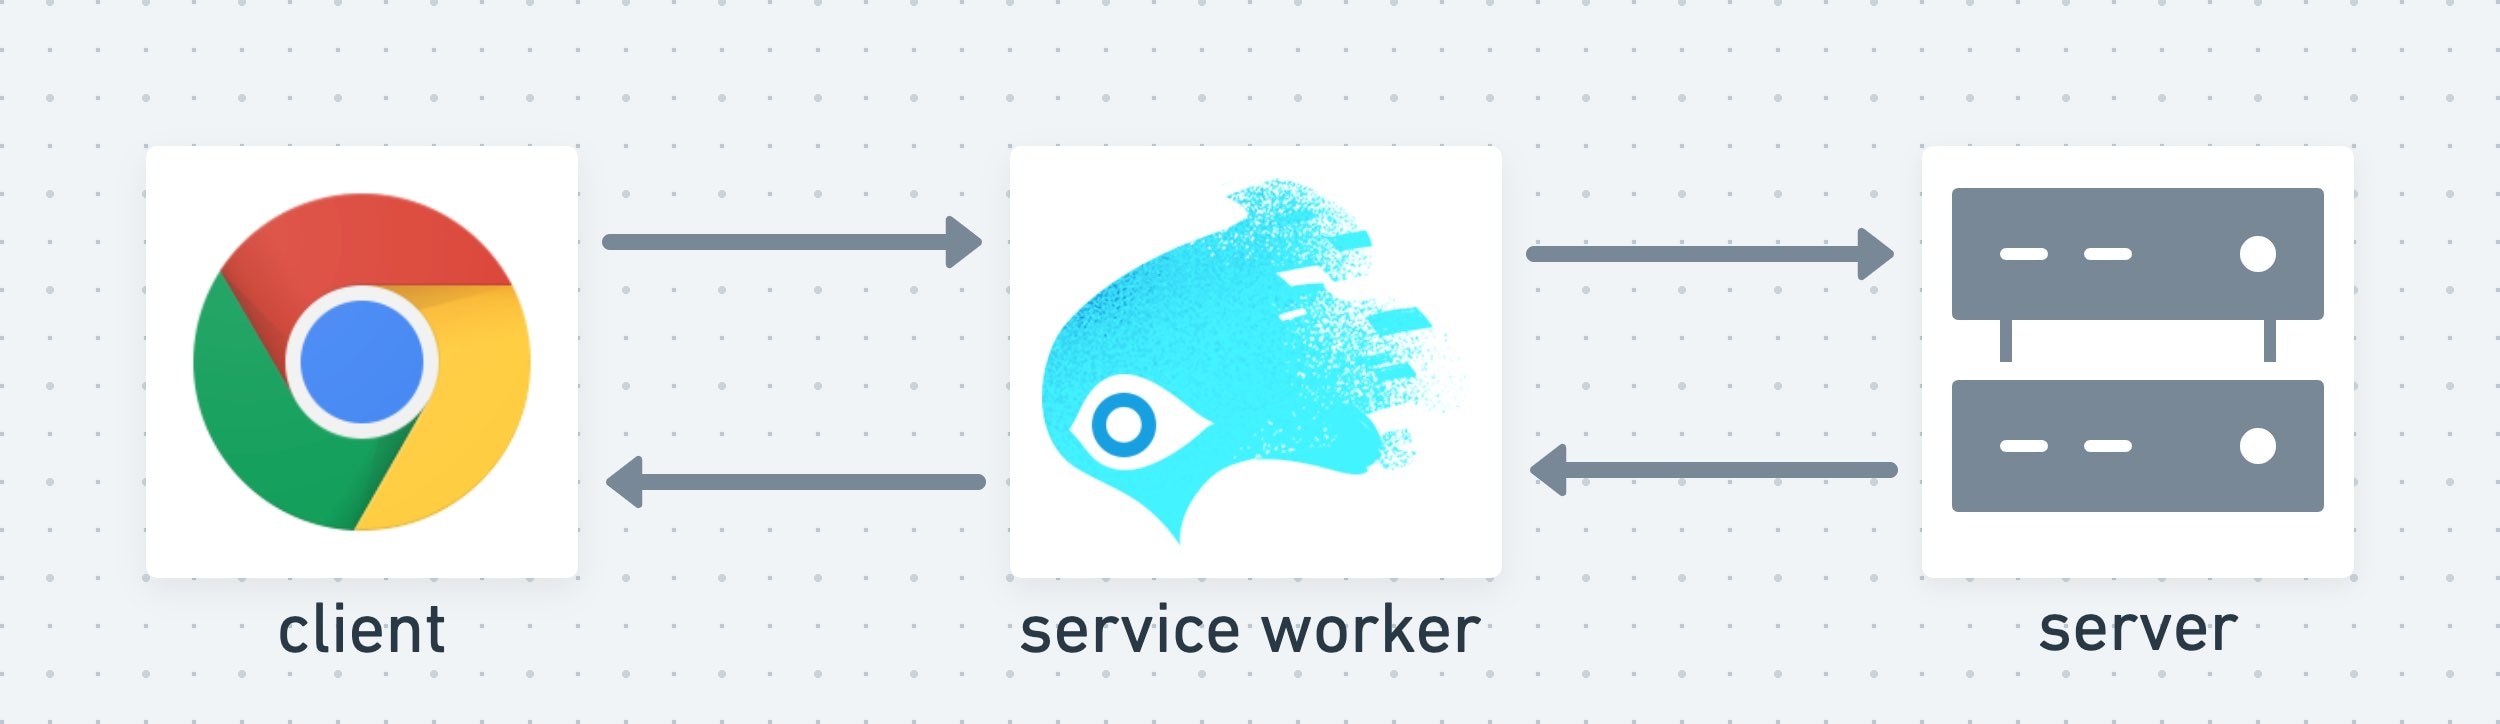 קובץ שירות (service worker) פועל כשכבה אמצעית בין הלקוח לשרת